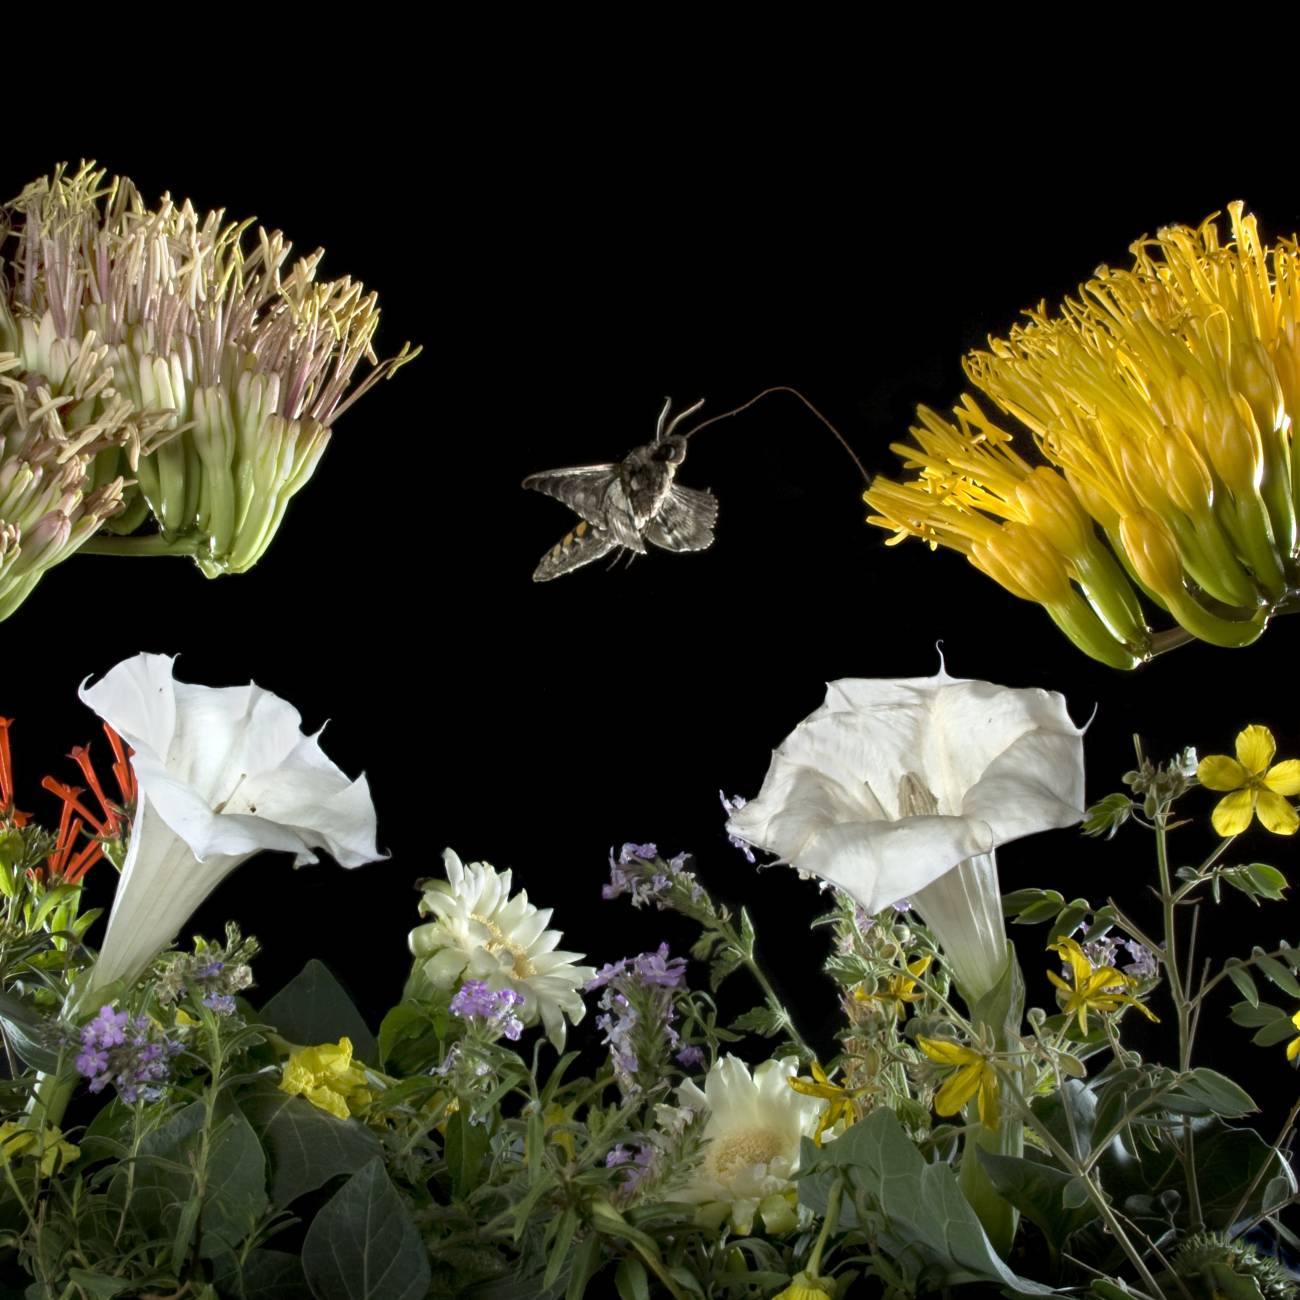 Las polillas cambian de flores porque aprenden a alimentarse de otras cuando sus favoritas no están presentes. Imagen: Charles Hedgcock 